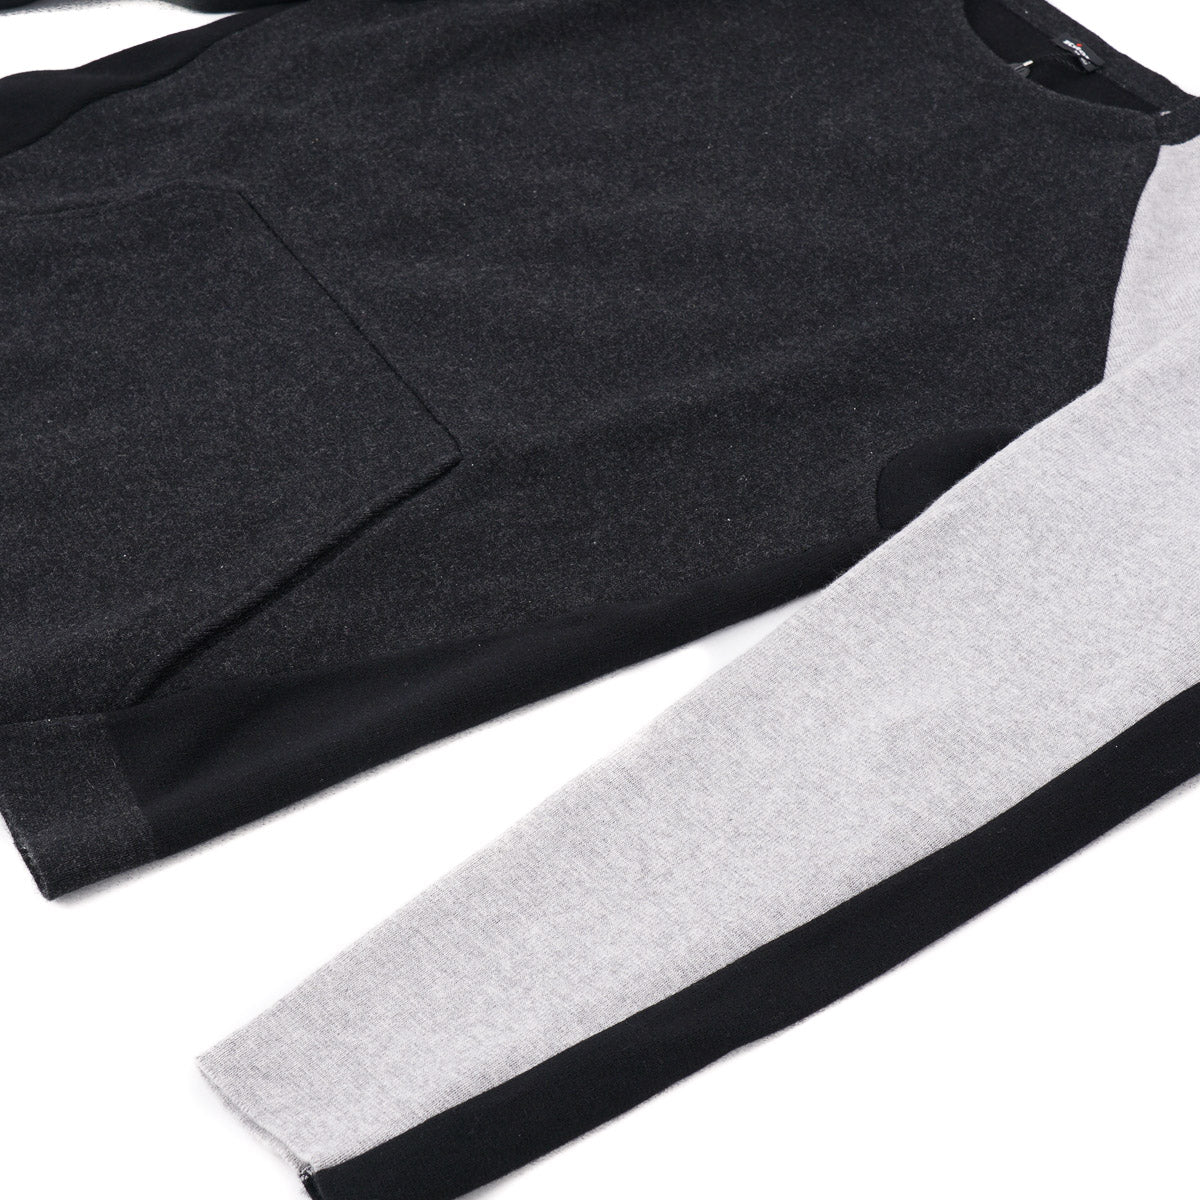 Kiton Colorblock Cashmere Sweater - Top Shelf Apparel